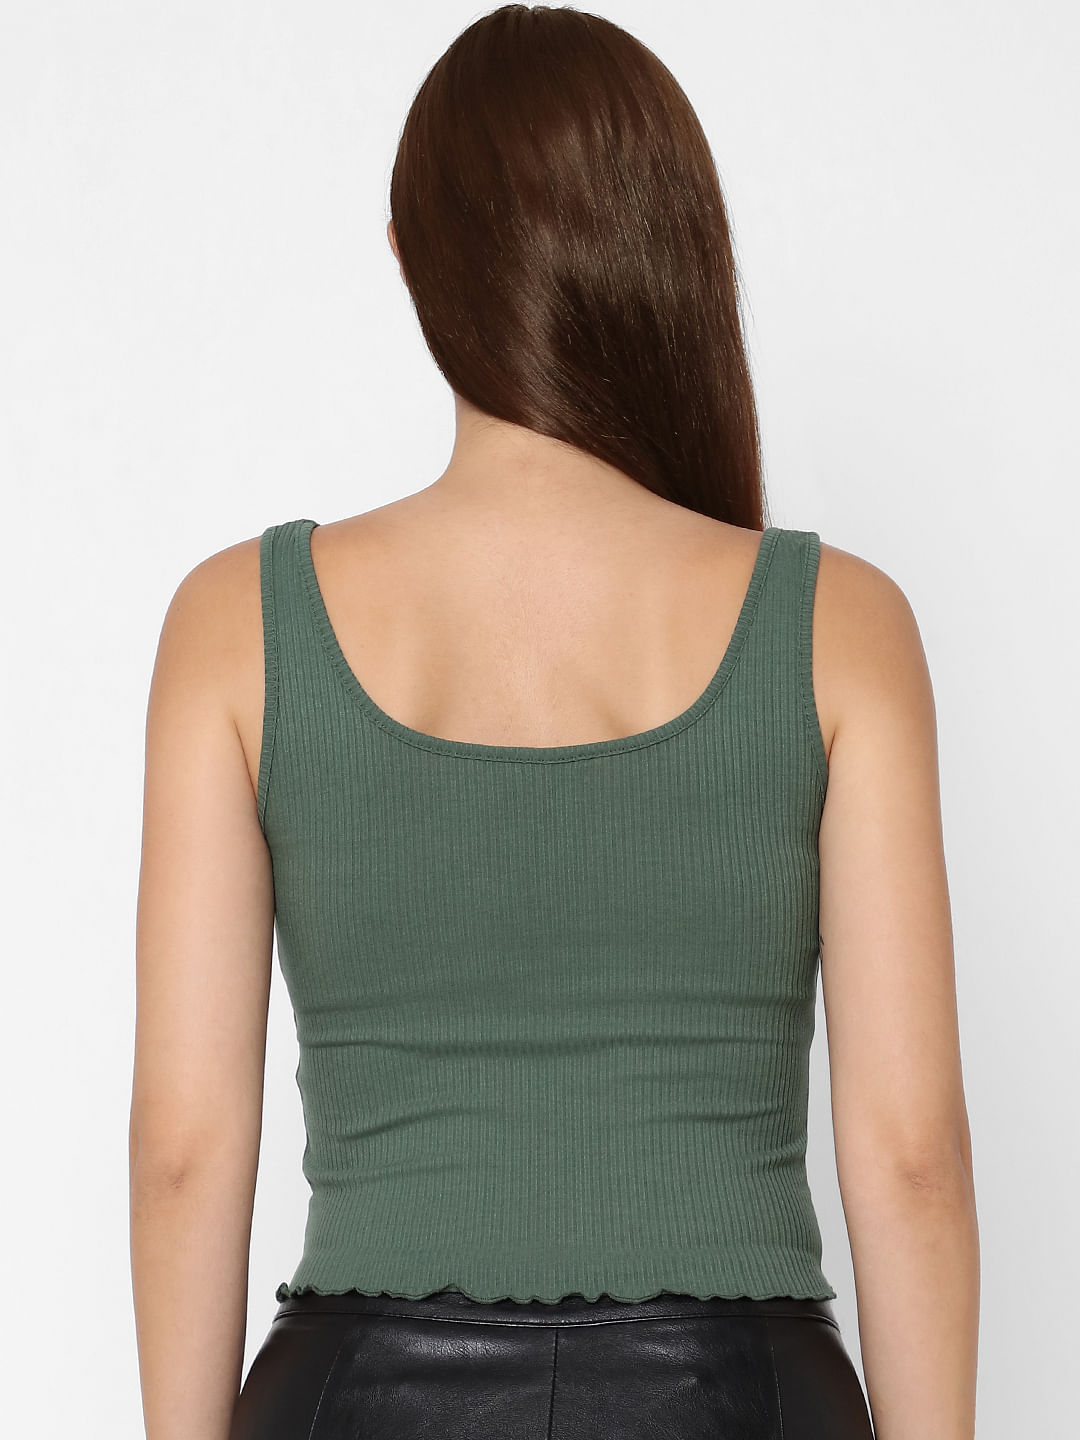 WOMEN FASHION Shirts & T-shirts Ribbed Zara crop top discount 62% Beige S 